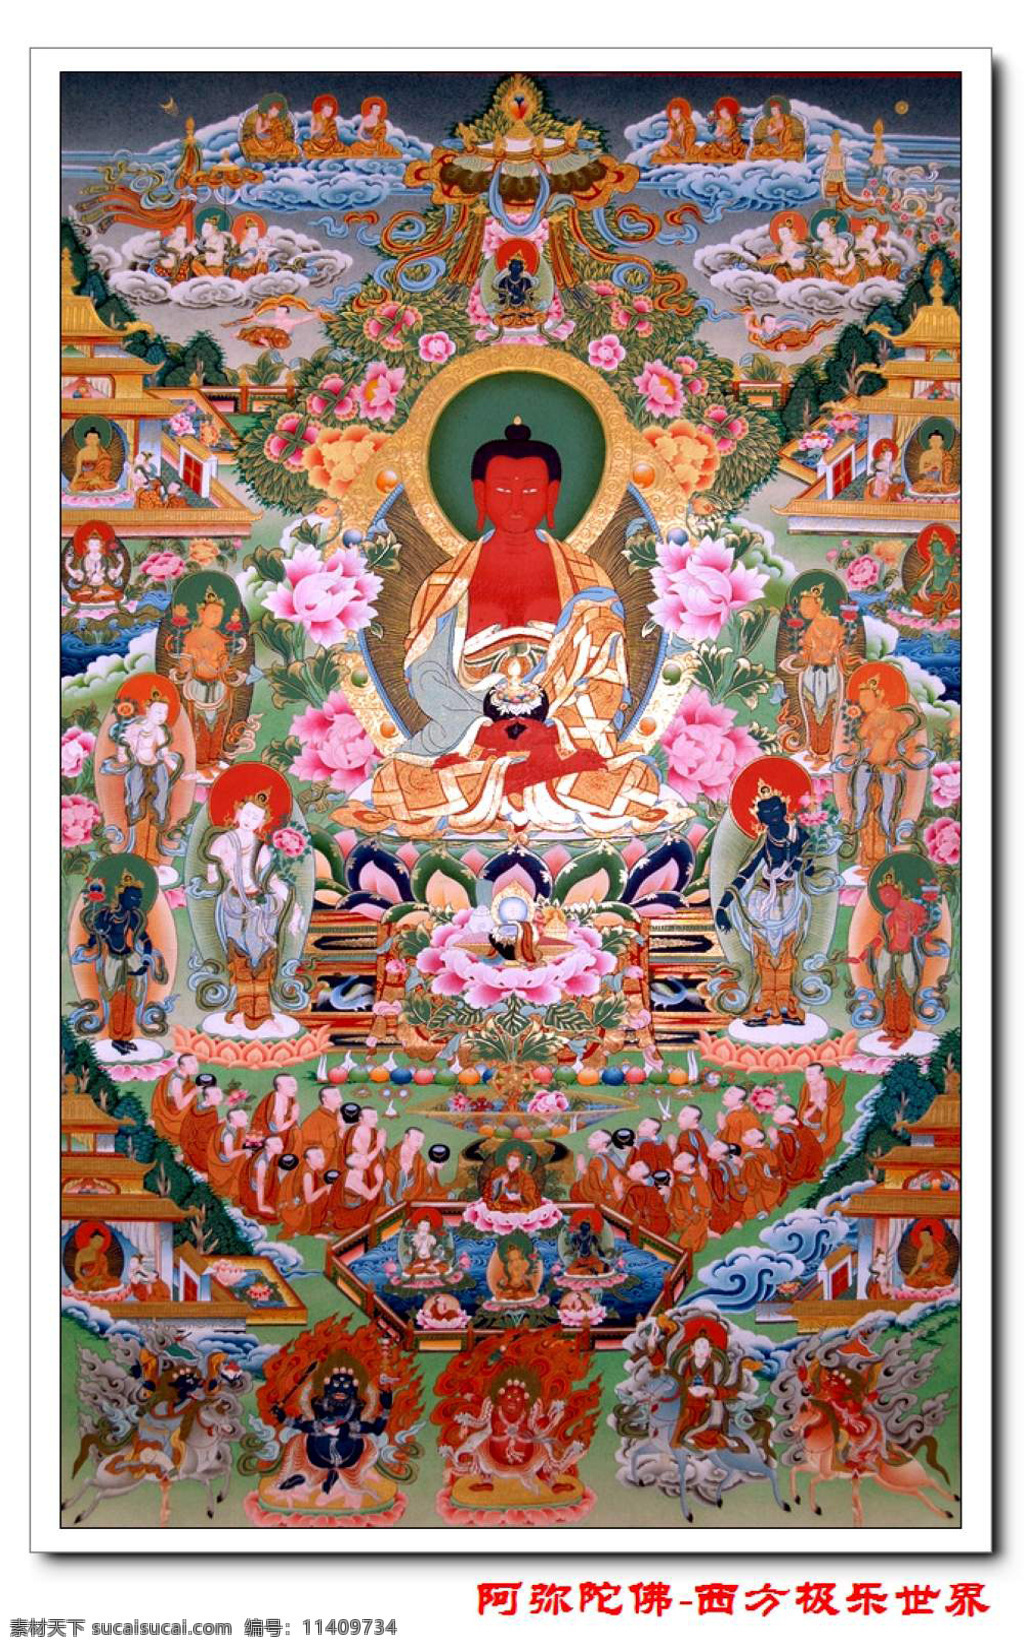 阿弥陀佛 西方极乐世界 唐卡 藏传佛教 宗教信仰 文化艺术